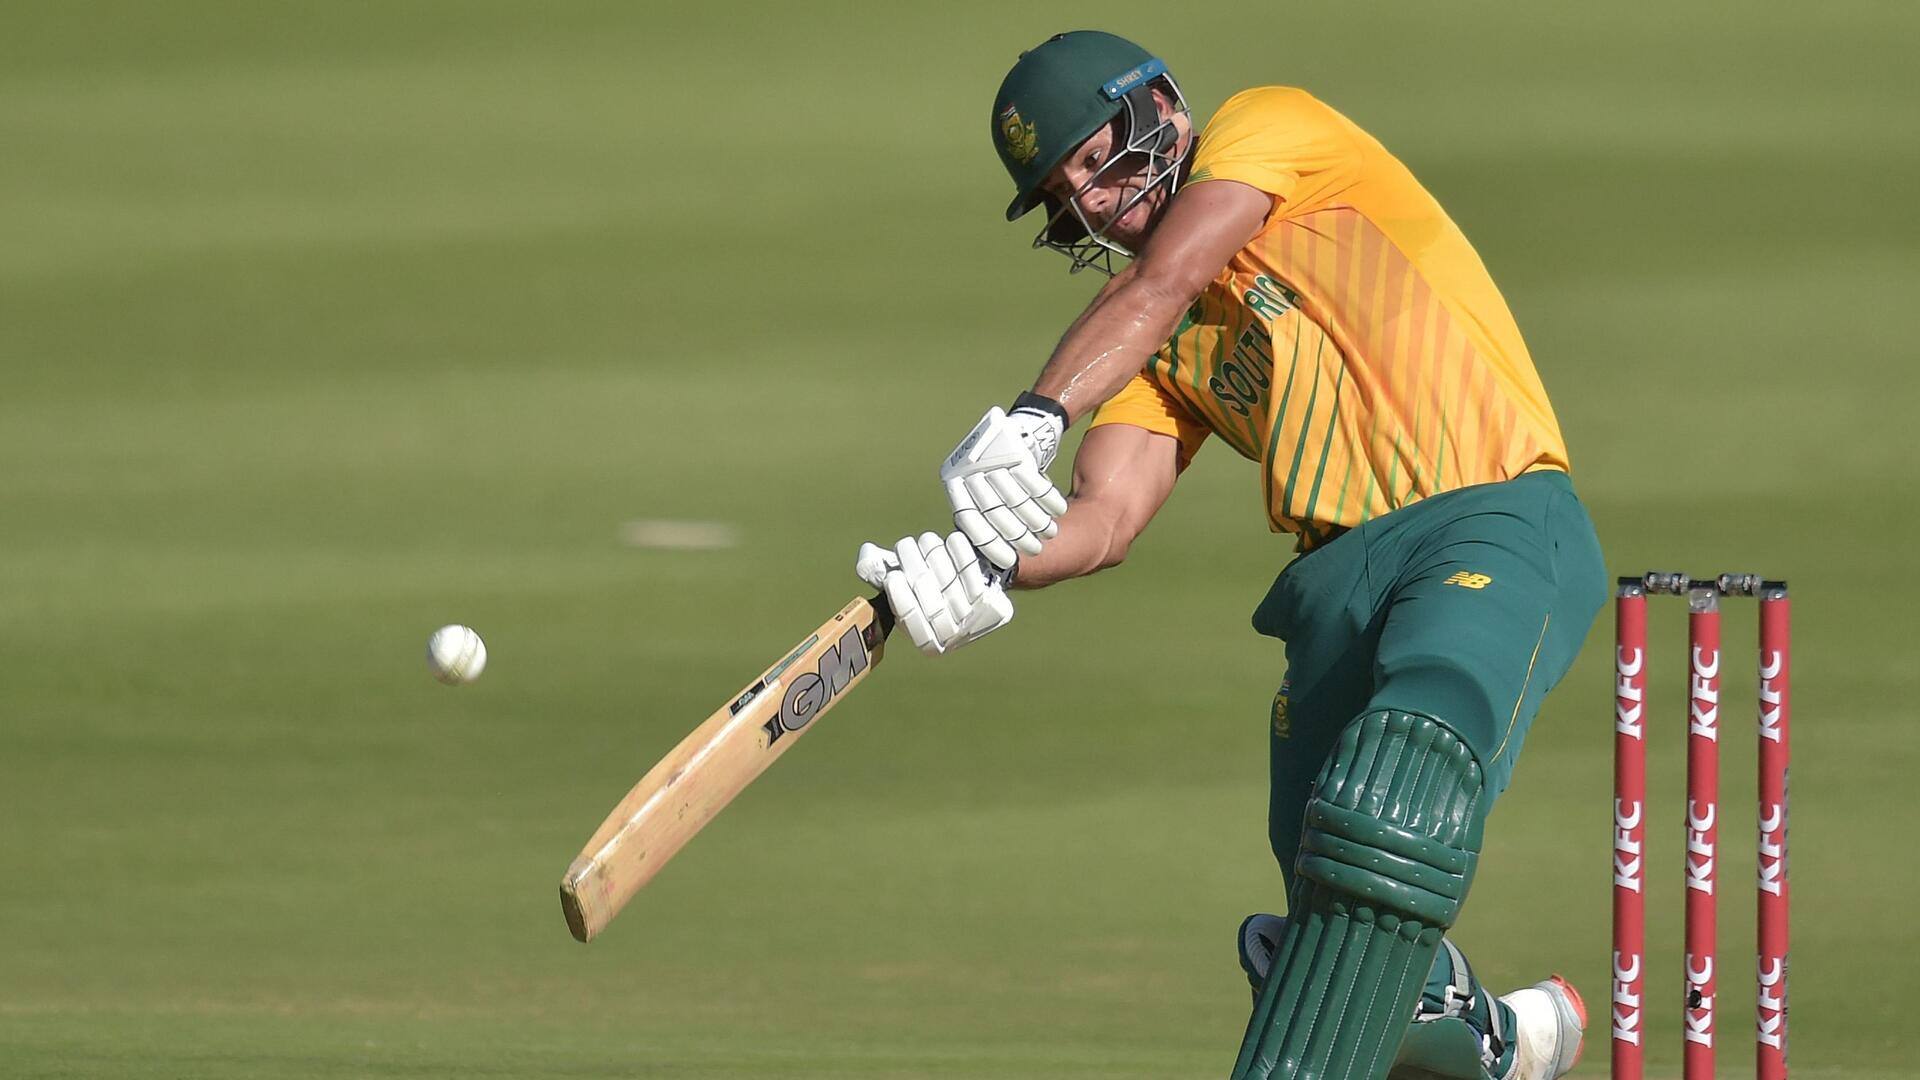 दक्षिण अफ्रीका बनाम ऑस्ट्रेलिया: एडेन मार्करम ने 74 गेंदों में जड़ा शतक, जानिए उनके आंकड़े 